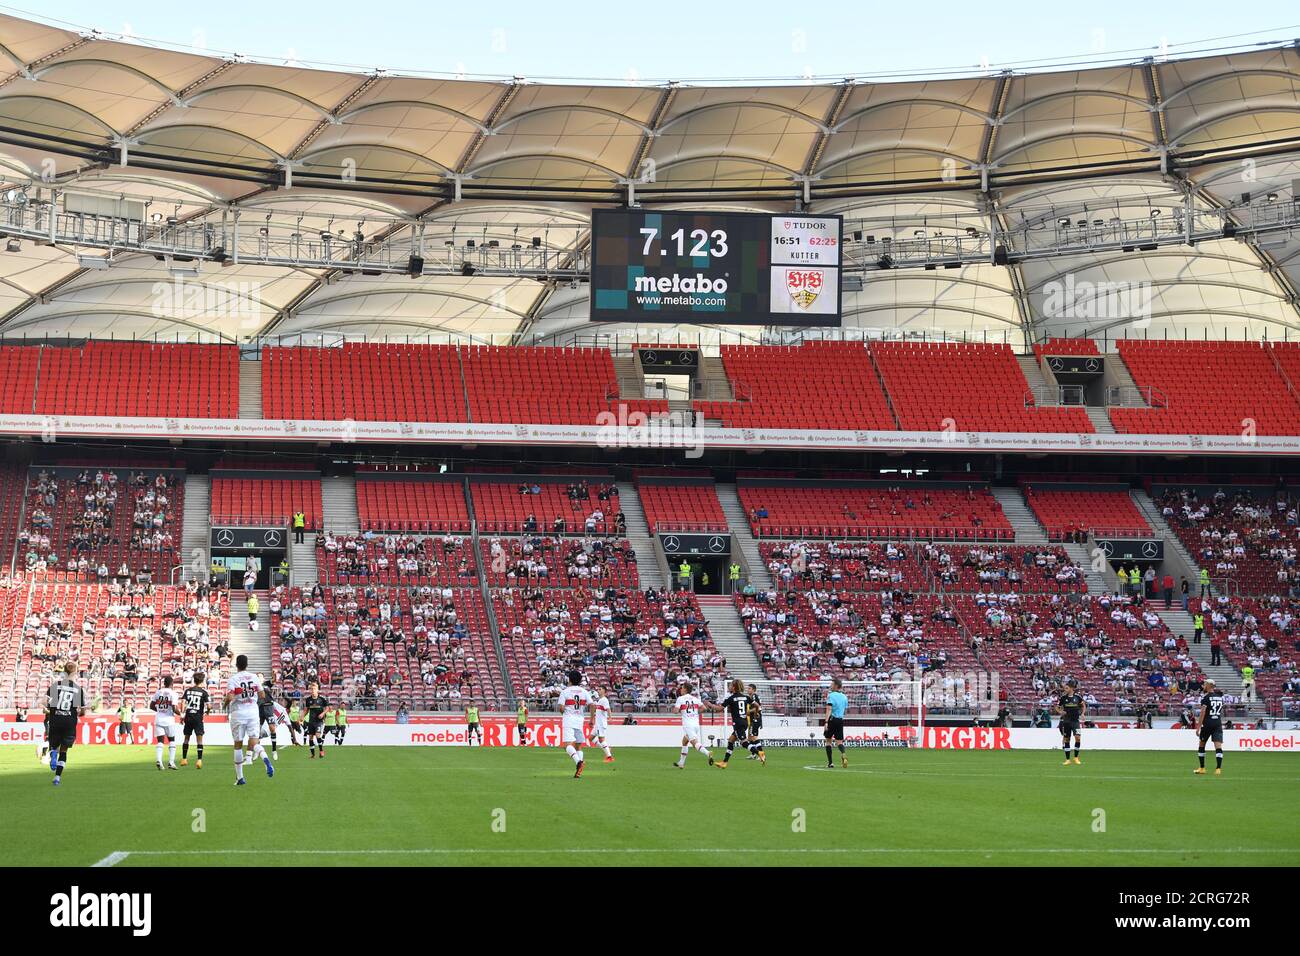 Zum ersten Mal wieder mit Fans, Fußballfans im Stadion in der Coornavirus-Pandemie. 7,123 Zuschauer fanden ihren Weg ins Stadion, Übersicht, Fußball 1. Bundesliga-Saison 2020/2021, 1 Spieltag, Spieltage01, VFB Stuttgart (S) - SC Freiburg (FR) 2-3, am 19. September 2020 in München MERCEDES BENZ ARENA, die DFL-VORSCHRIFTEN VERBIETEN DIE VERWENDUNG VON FOTOS ALS BILDSEQUENZEN UND/ODER QUASI-VIDEO. Weltweite Nutzung Stockfoto